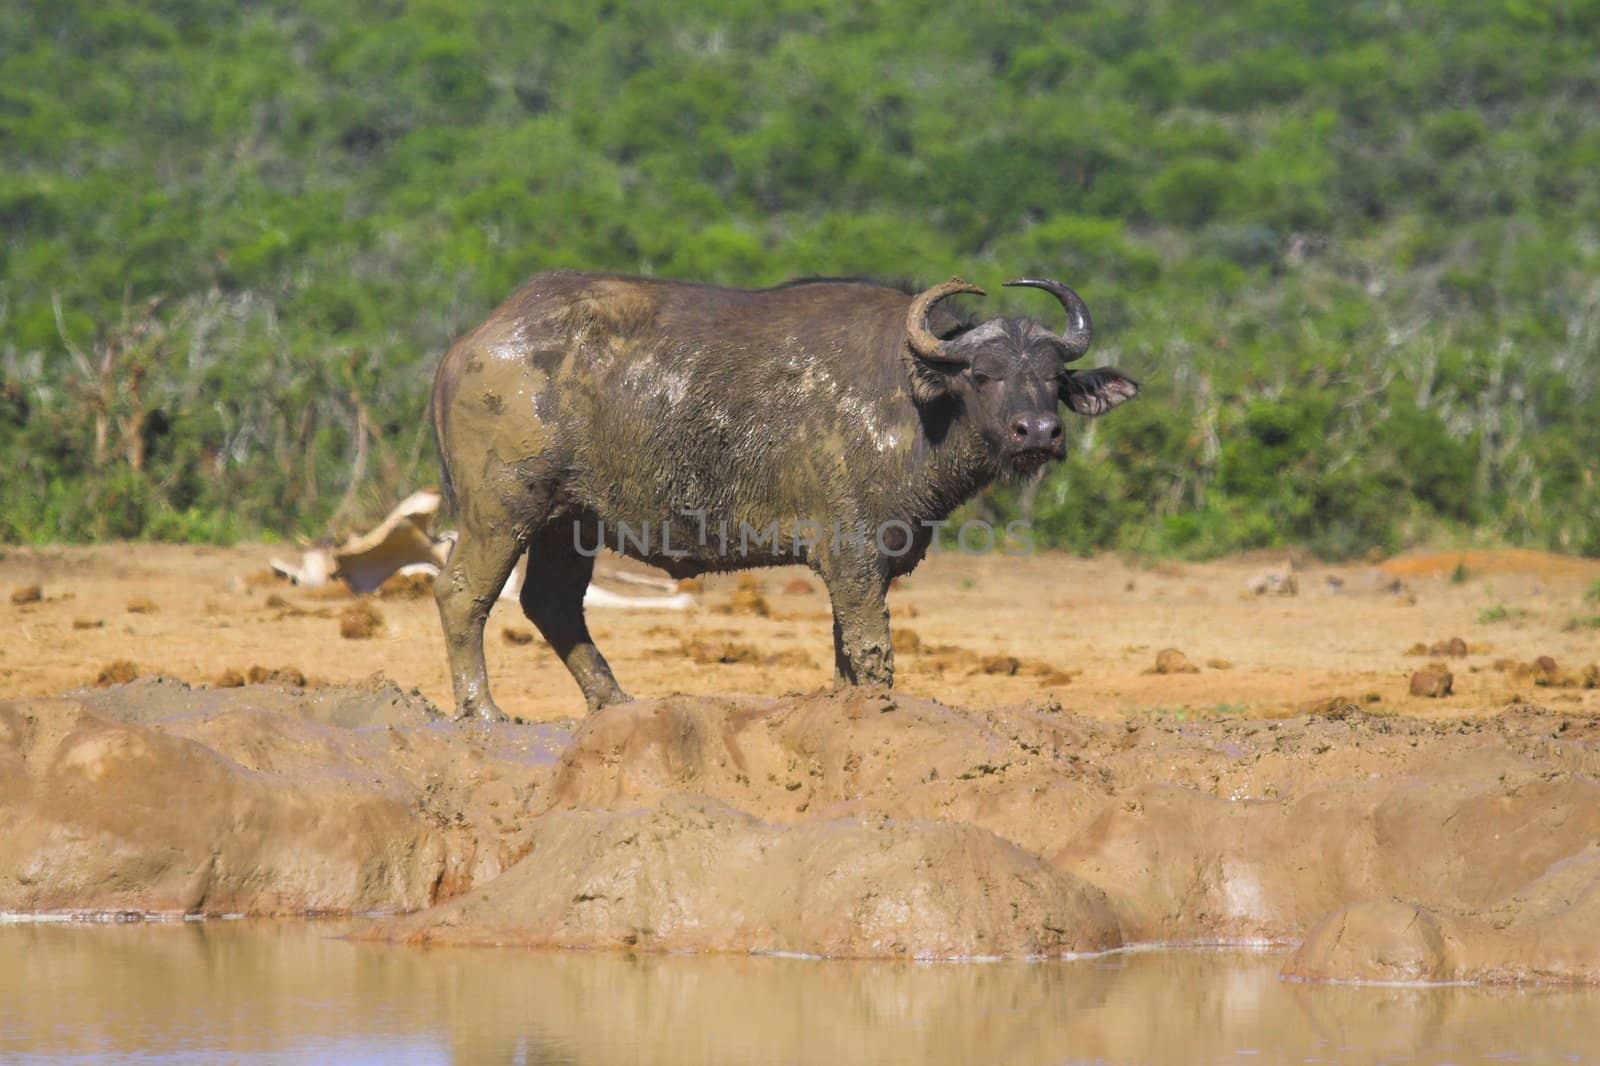 Muddy Cape Buffalo at the waterhole